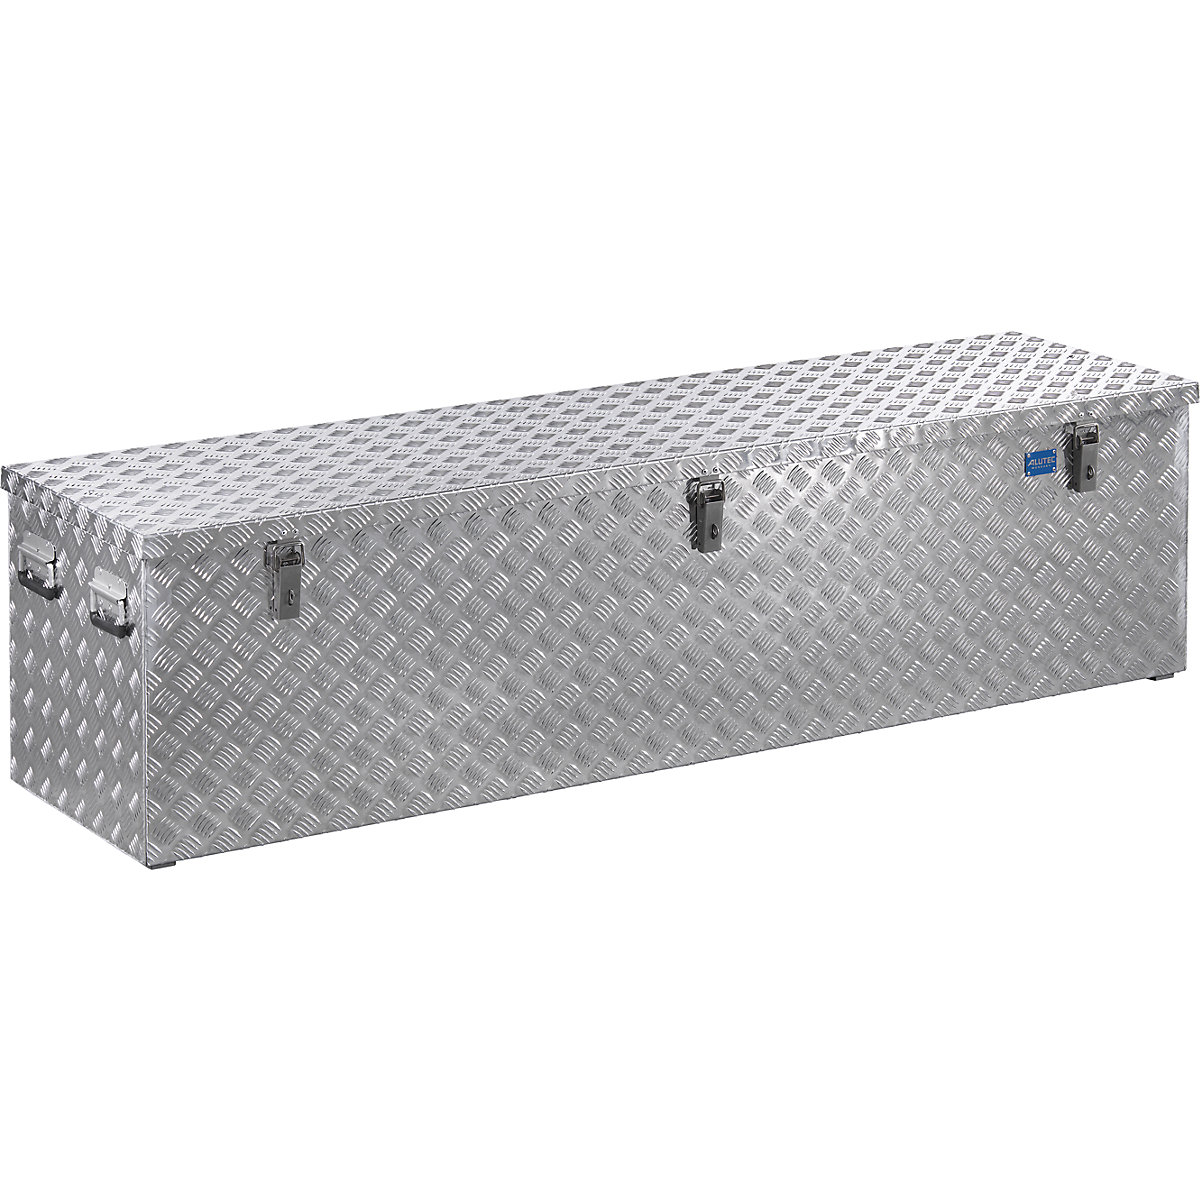 Aluminijski transportni kovčeg s rebrastim limom, s plinskim prigušnikom, volumen 470 l-15